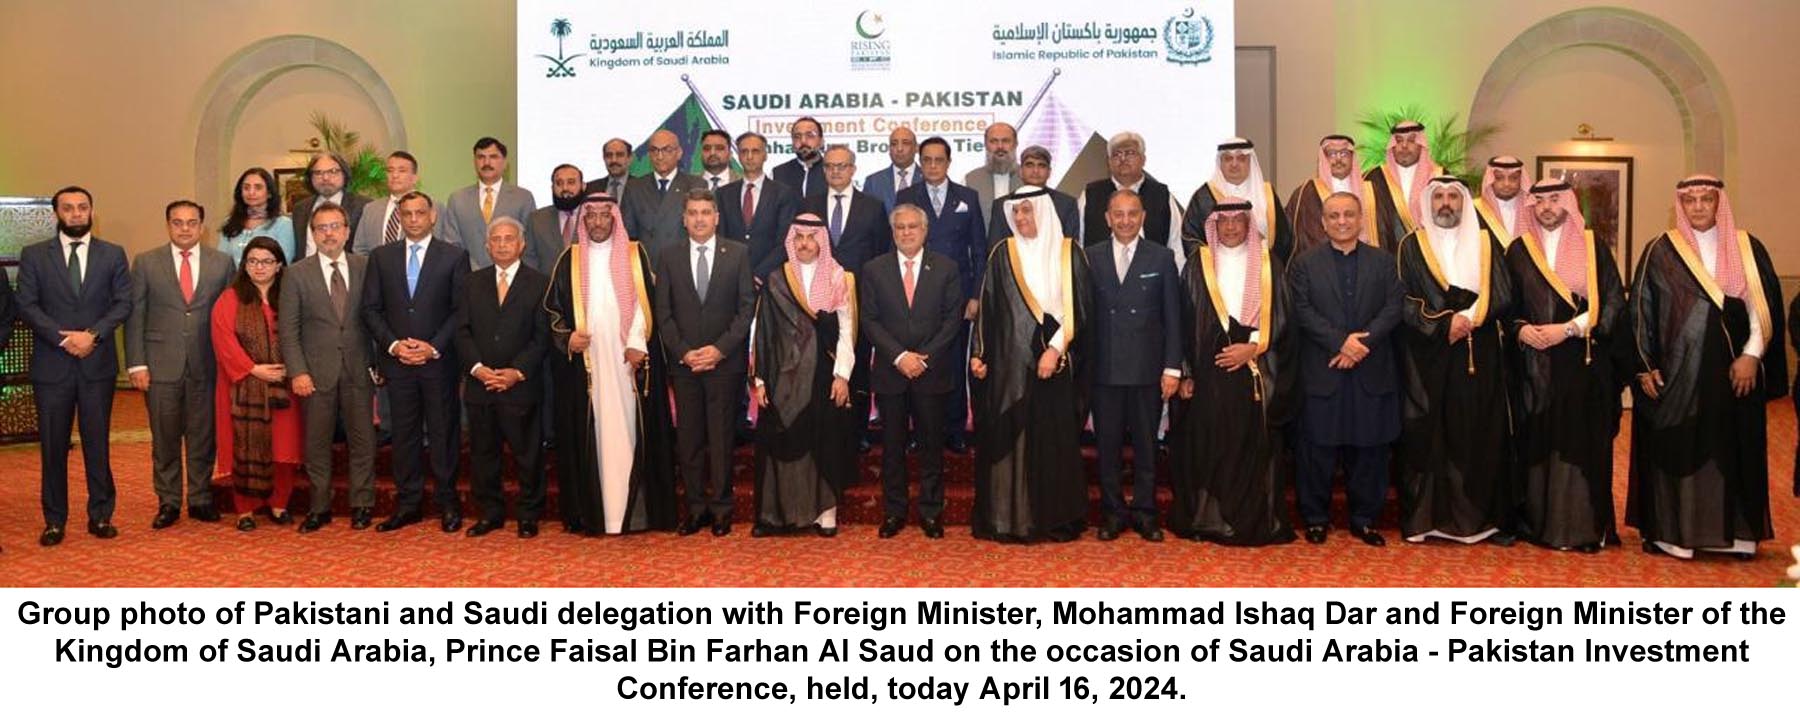 باكستان تدعو السعودية لإقامة مشاريع مشتركة بالمطارات وشركات الطيران المملوكة للدولة